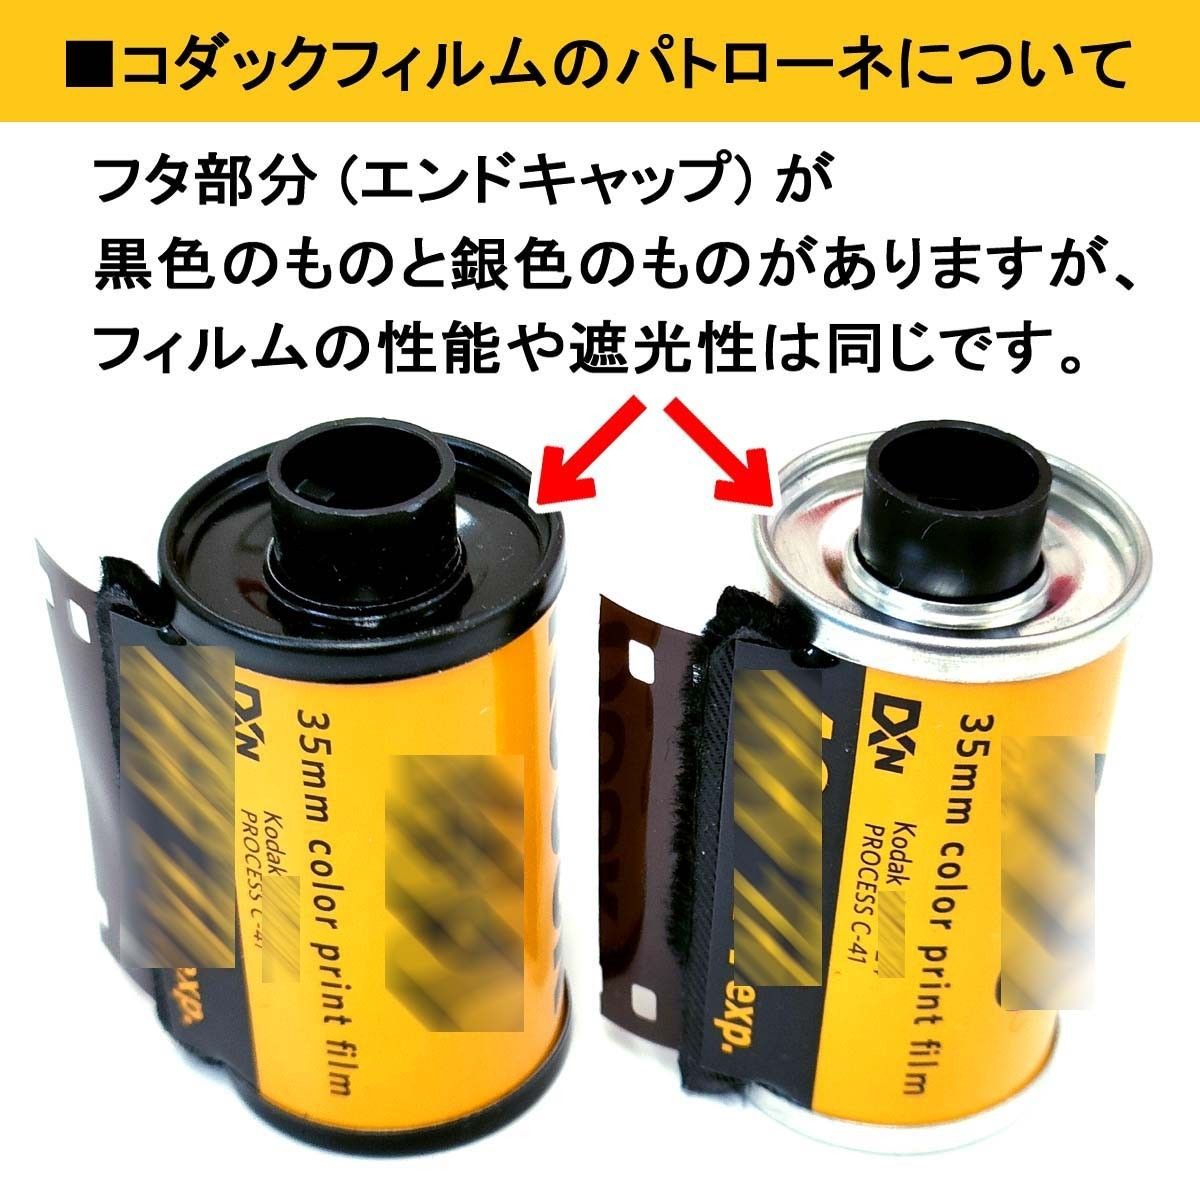 GOLD200-24枚撮【3本入】Kodak カラーネガフィルム ISO感度200 135/35mm コダック 新品